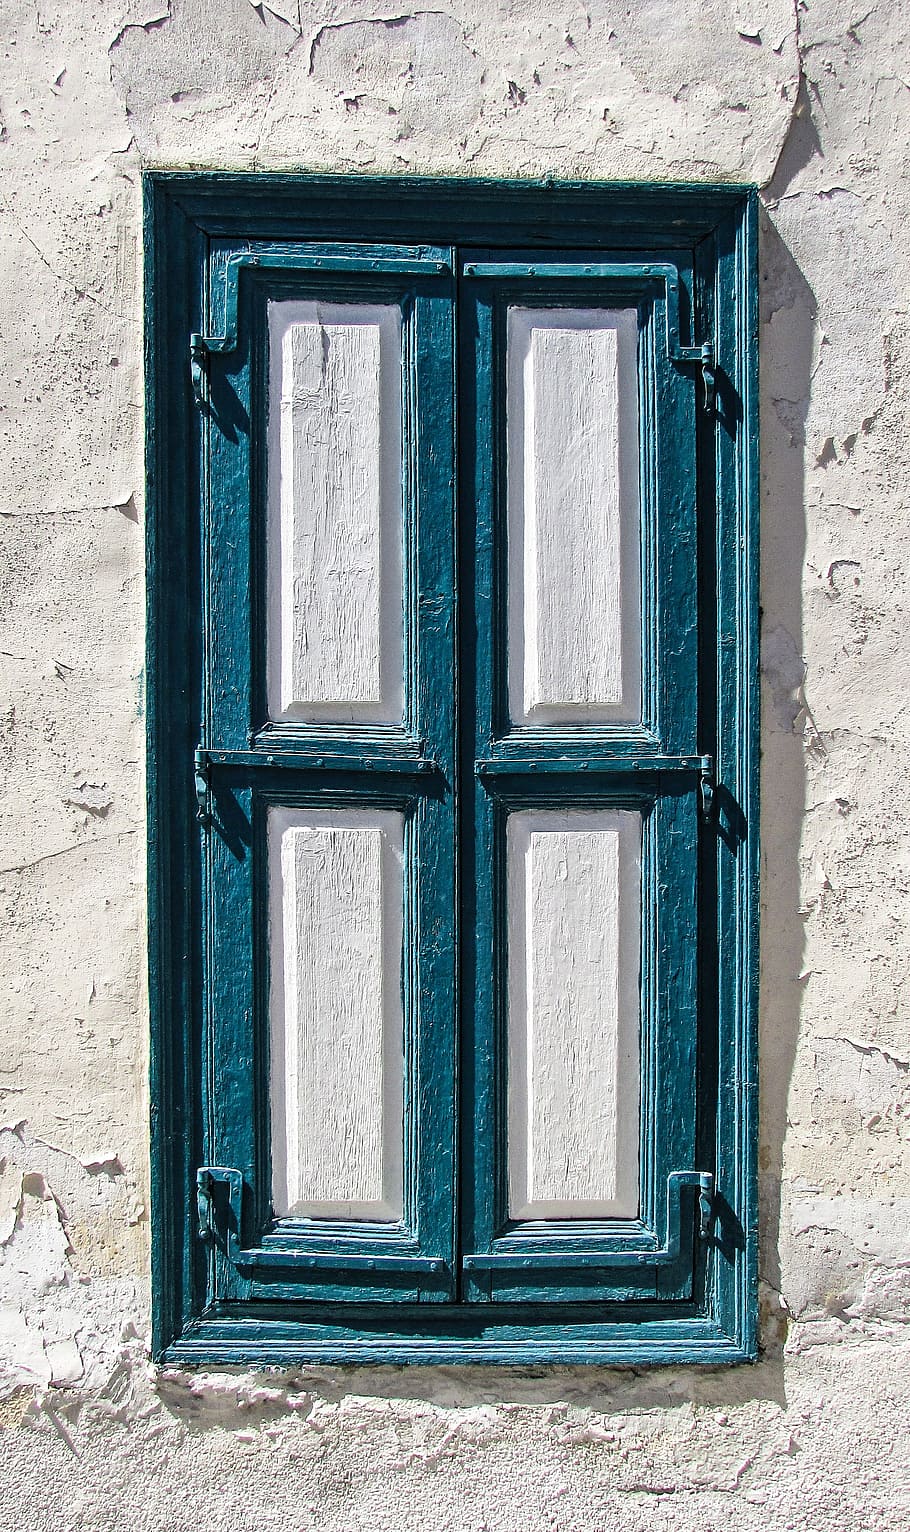 biru, putih, kayu, jendela, rumah, tua, arsitektur, dinding, desa, tradisional